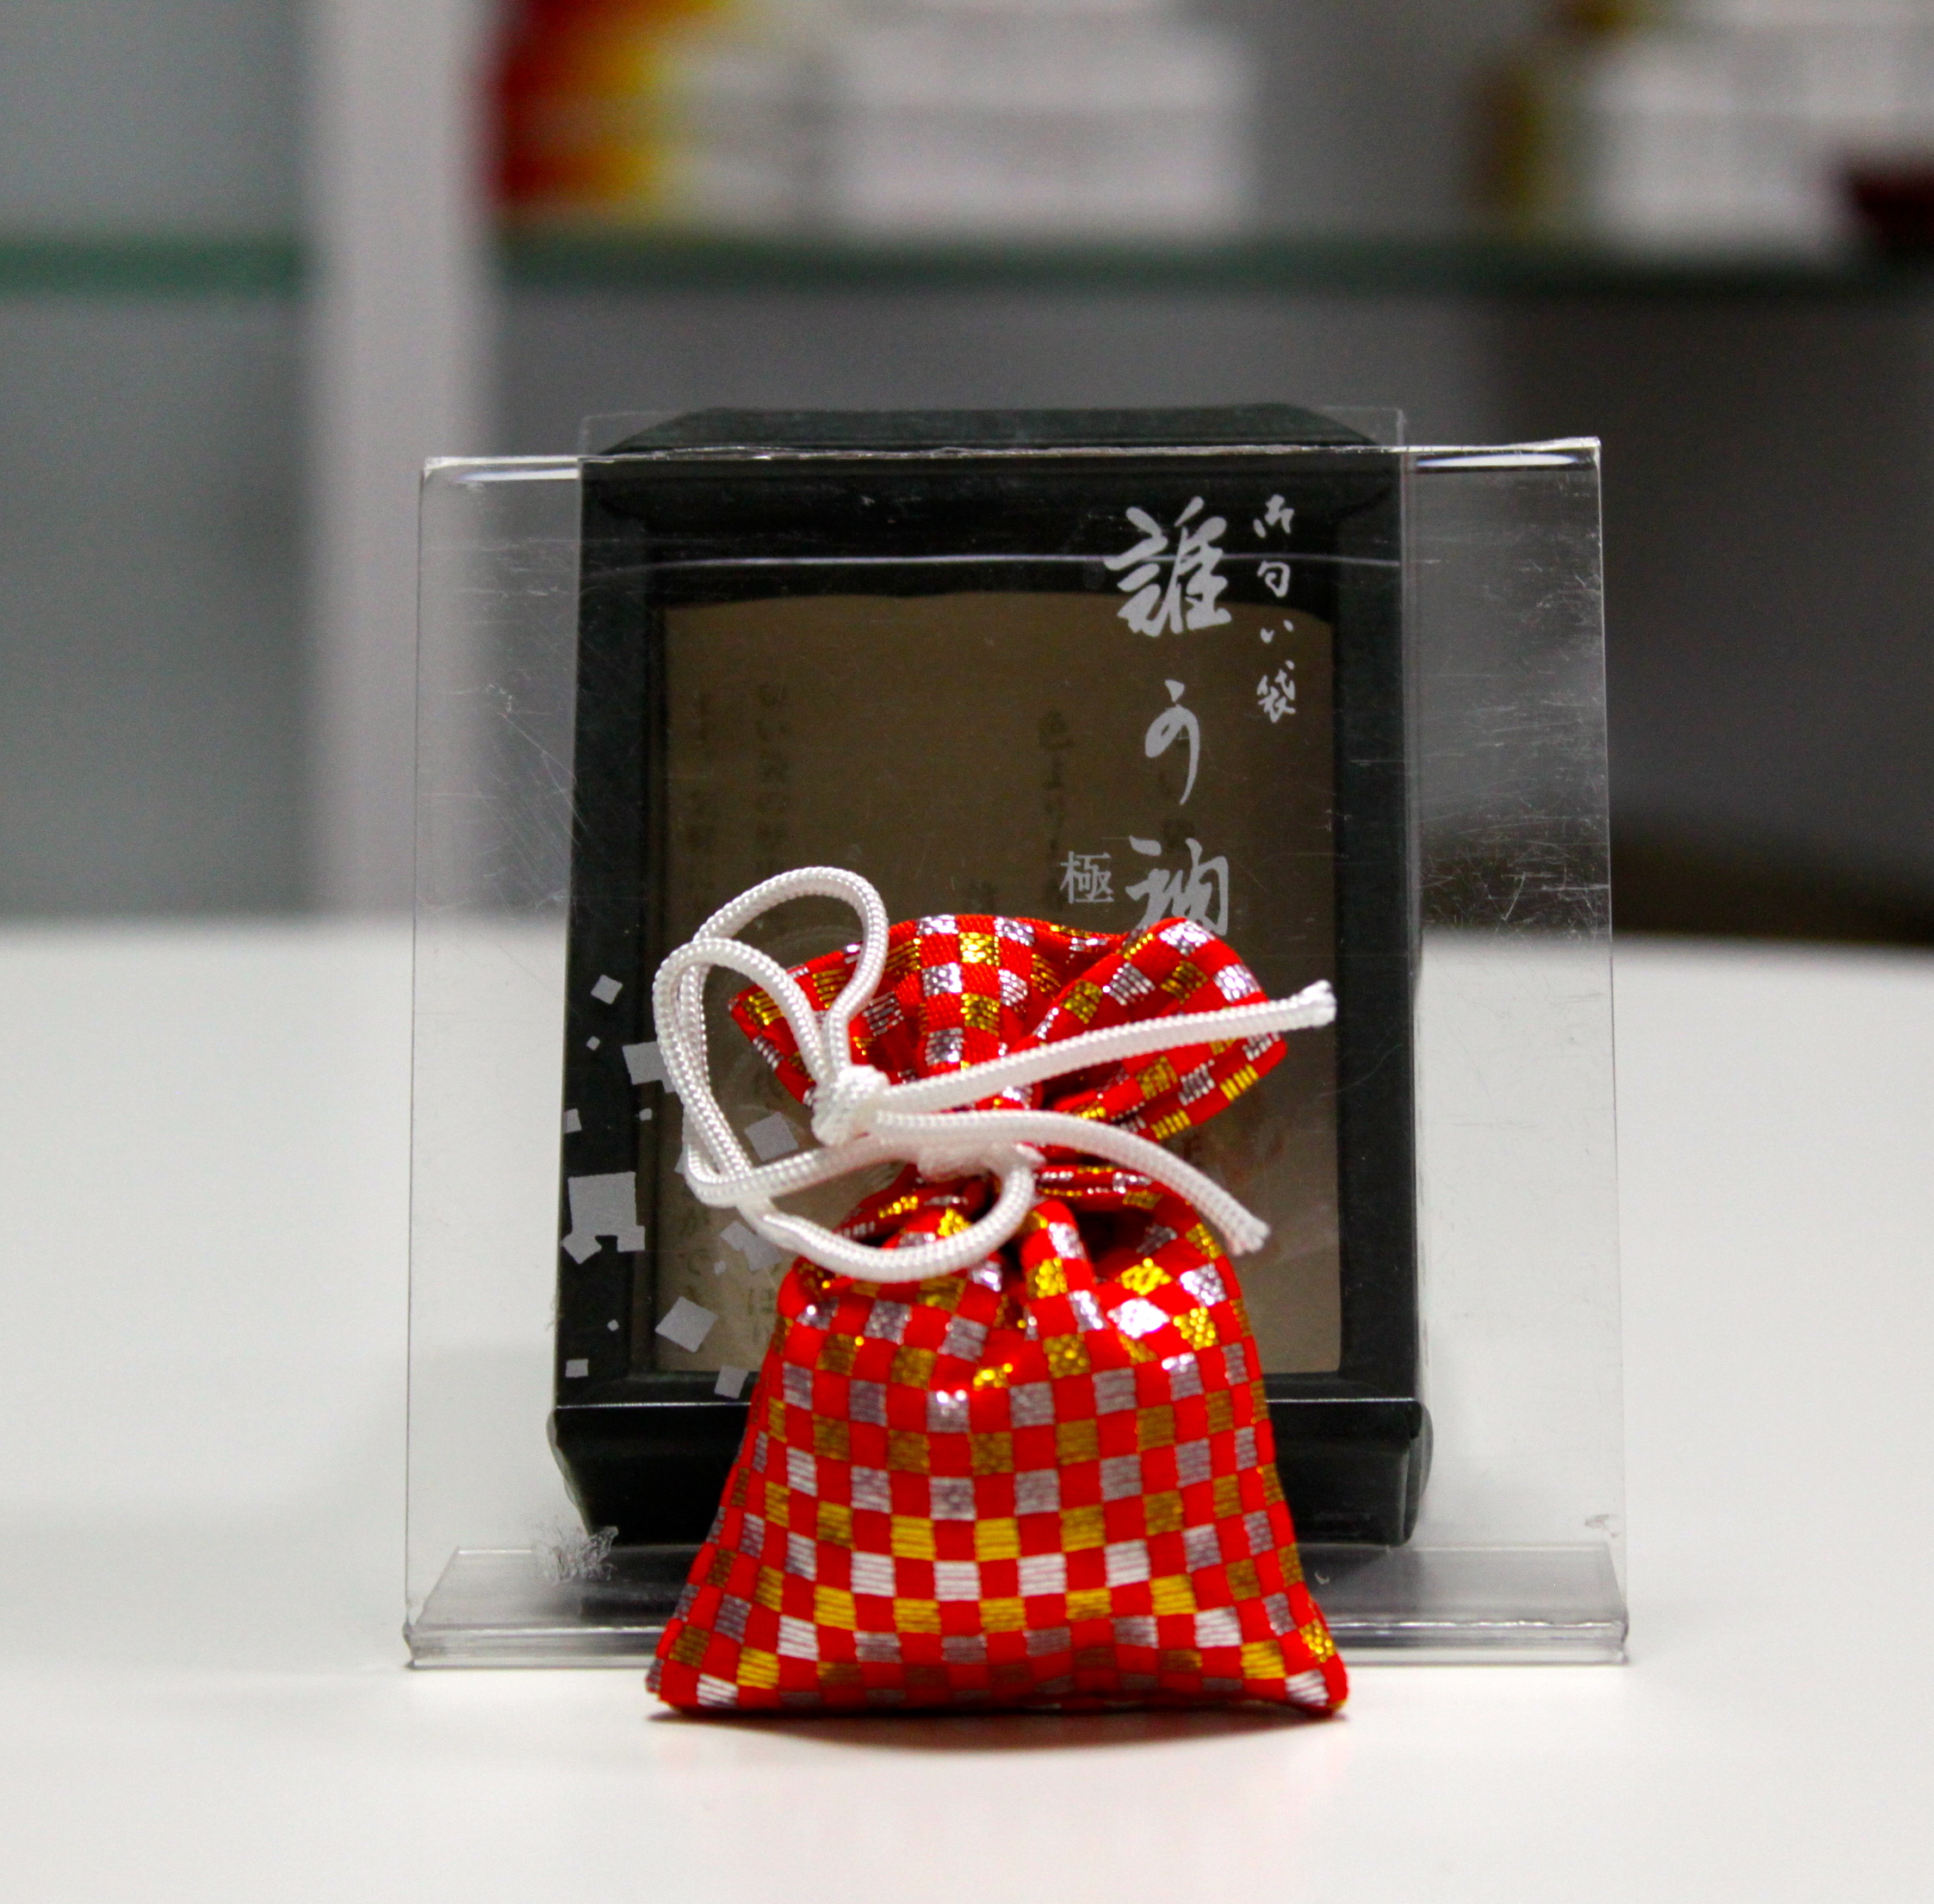 Túi thơm Gokuhin Shoyeido Nhật Bản làm từ thảo mộc dùng để treo xe ô tô, treo tủ quần áo, treo túi xách, để trong phòng giúp tạo hương thơm